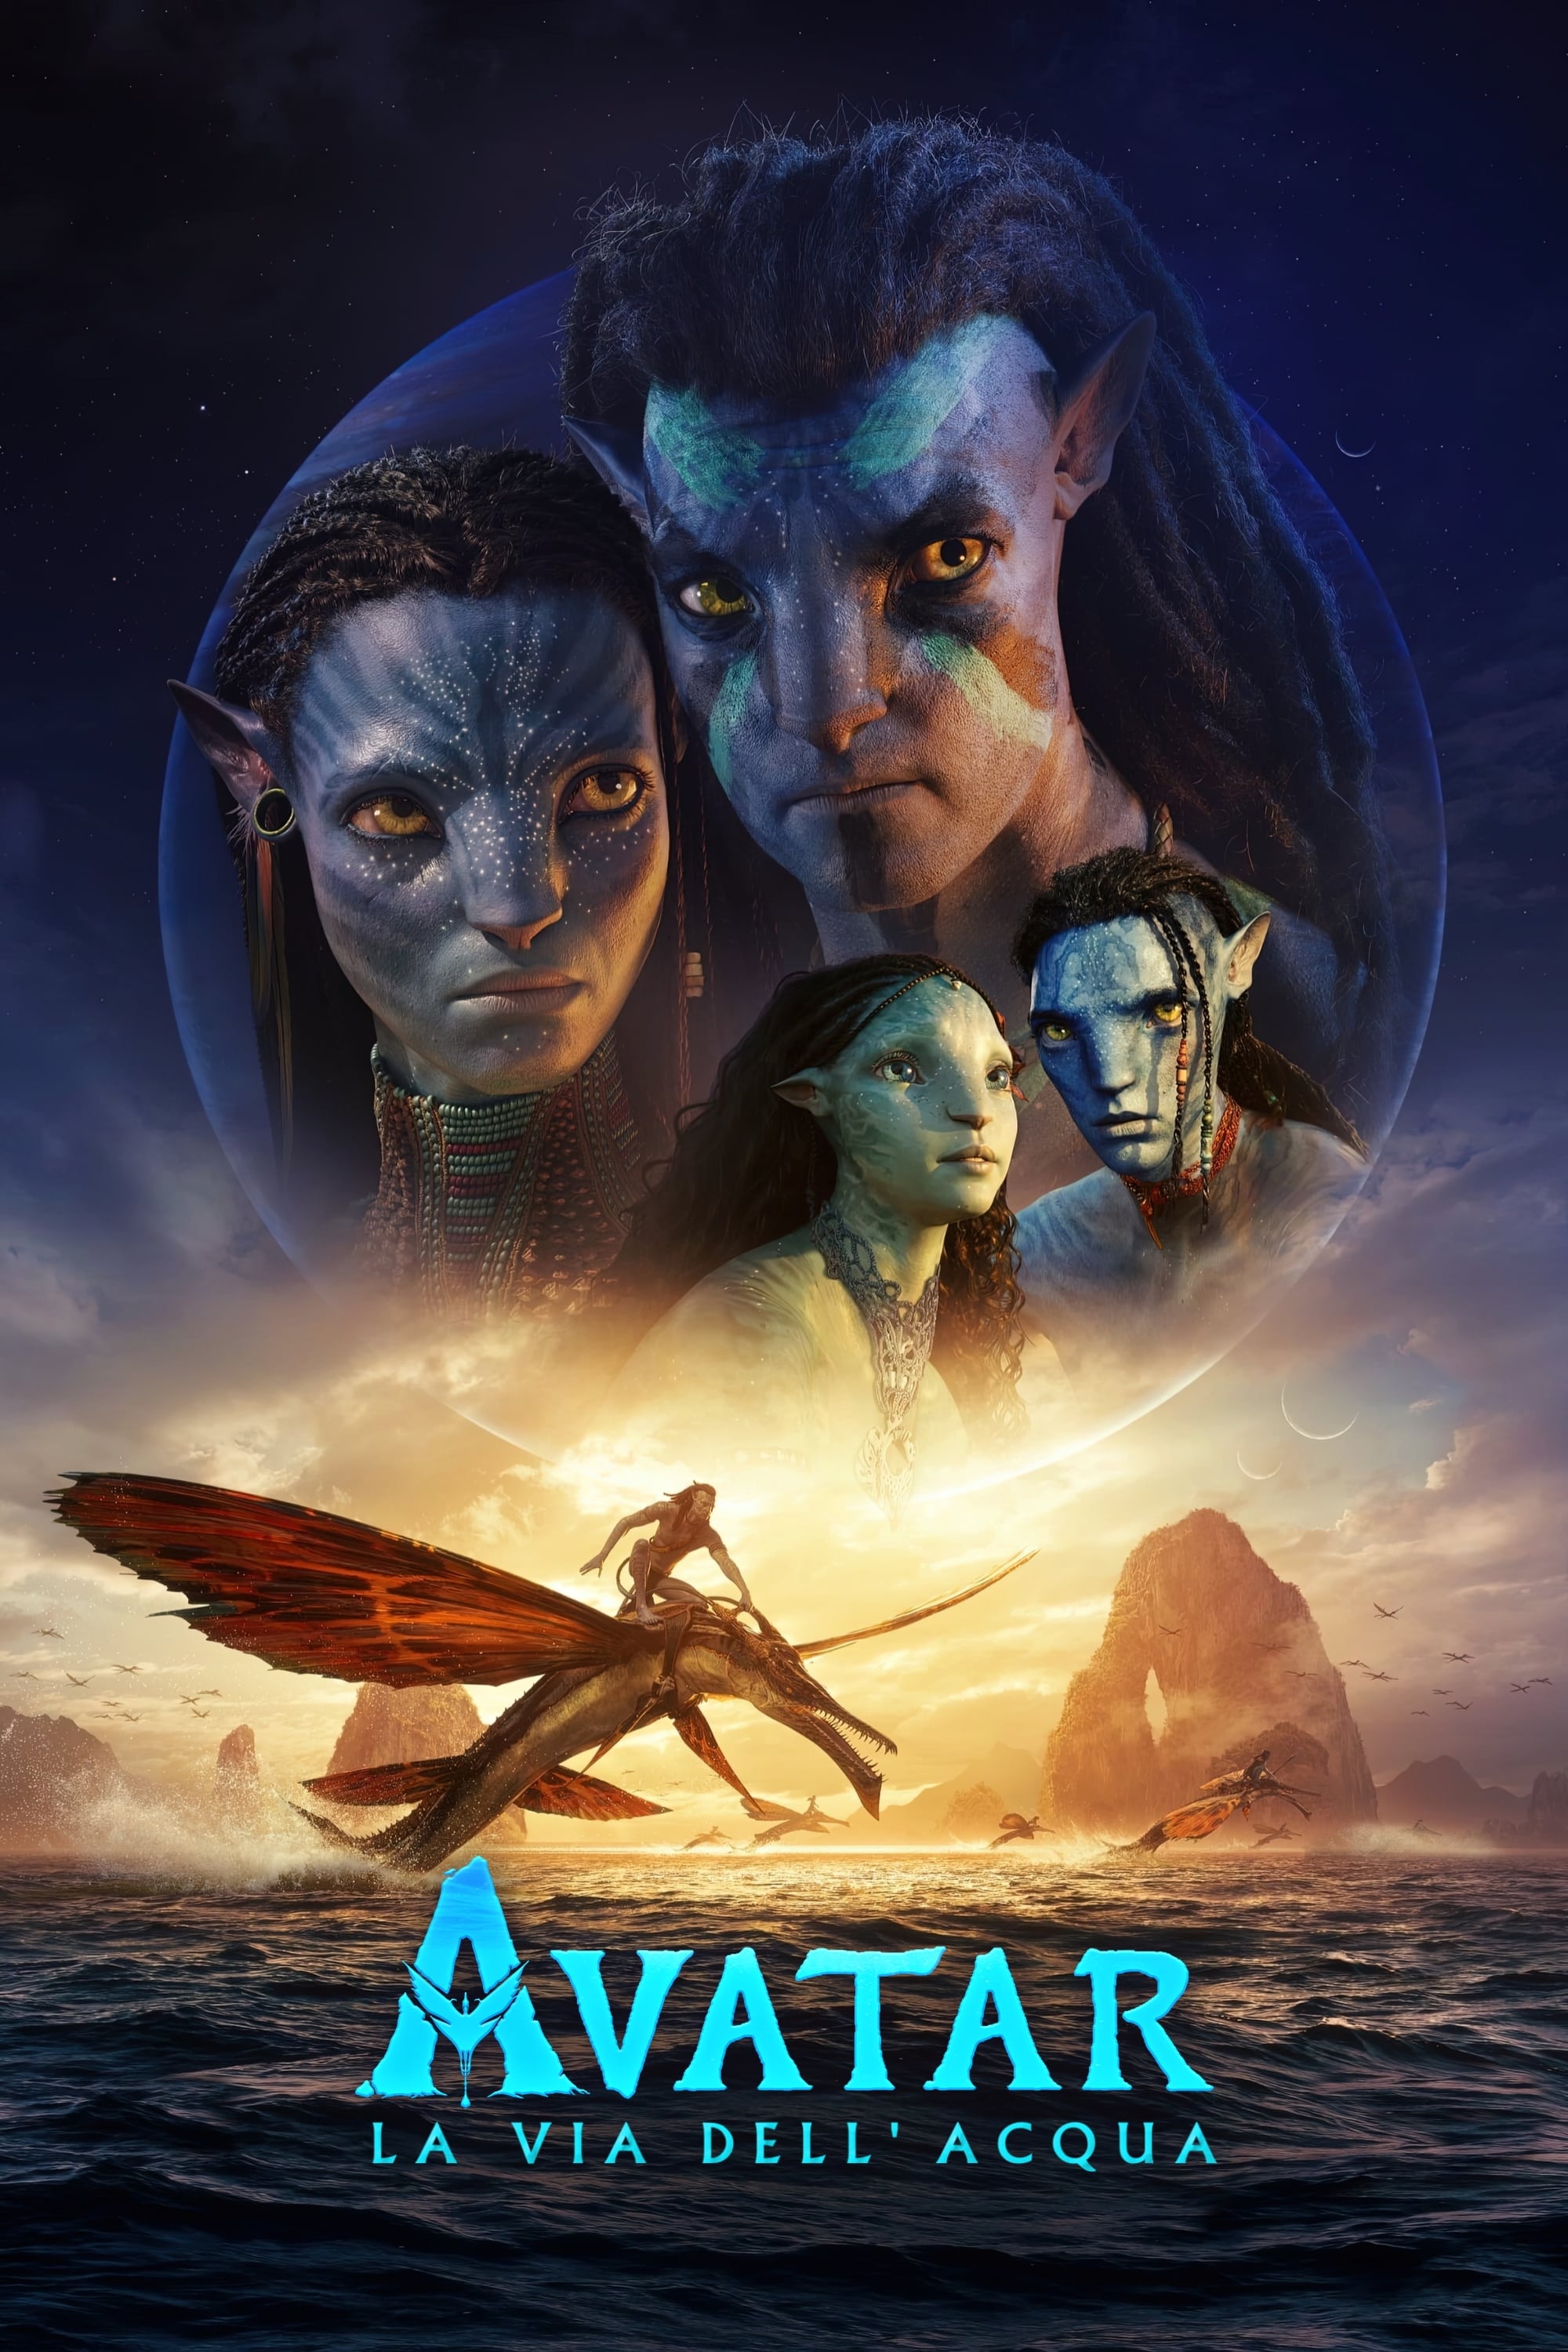 Avatar - La via dell'acqua film